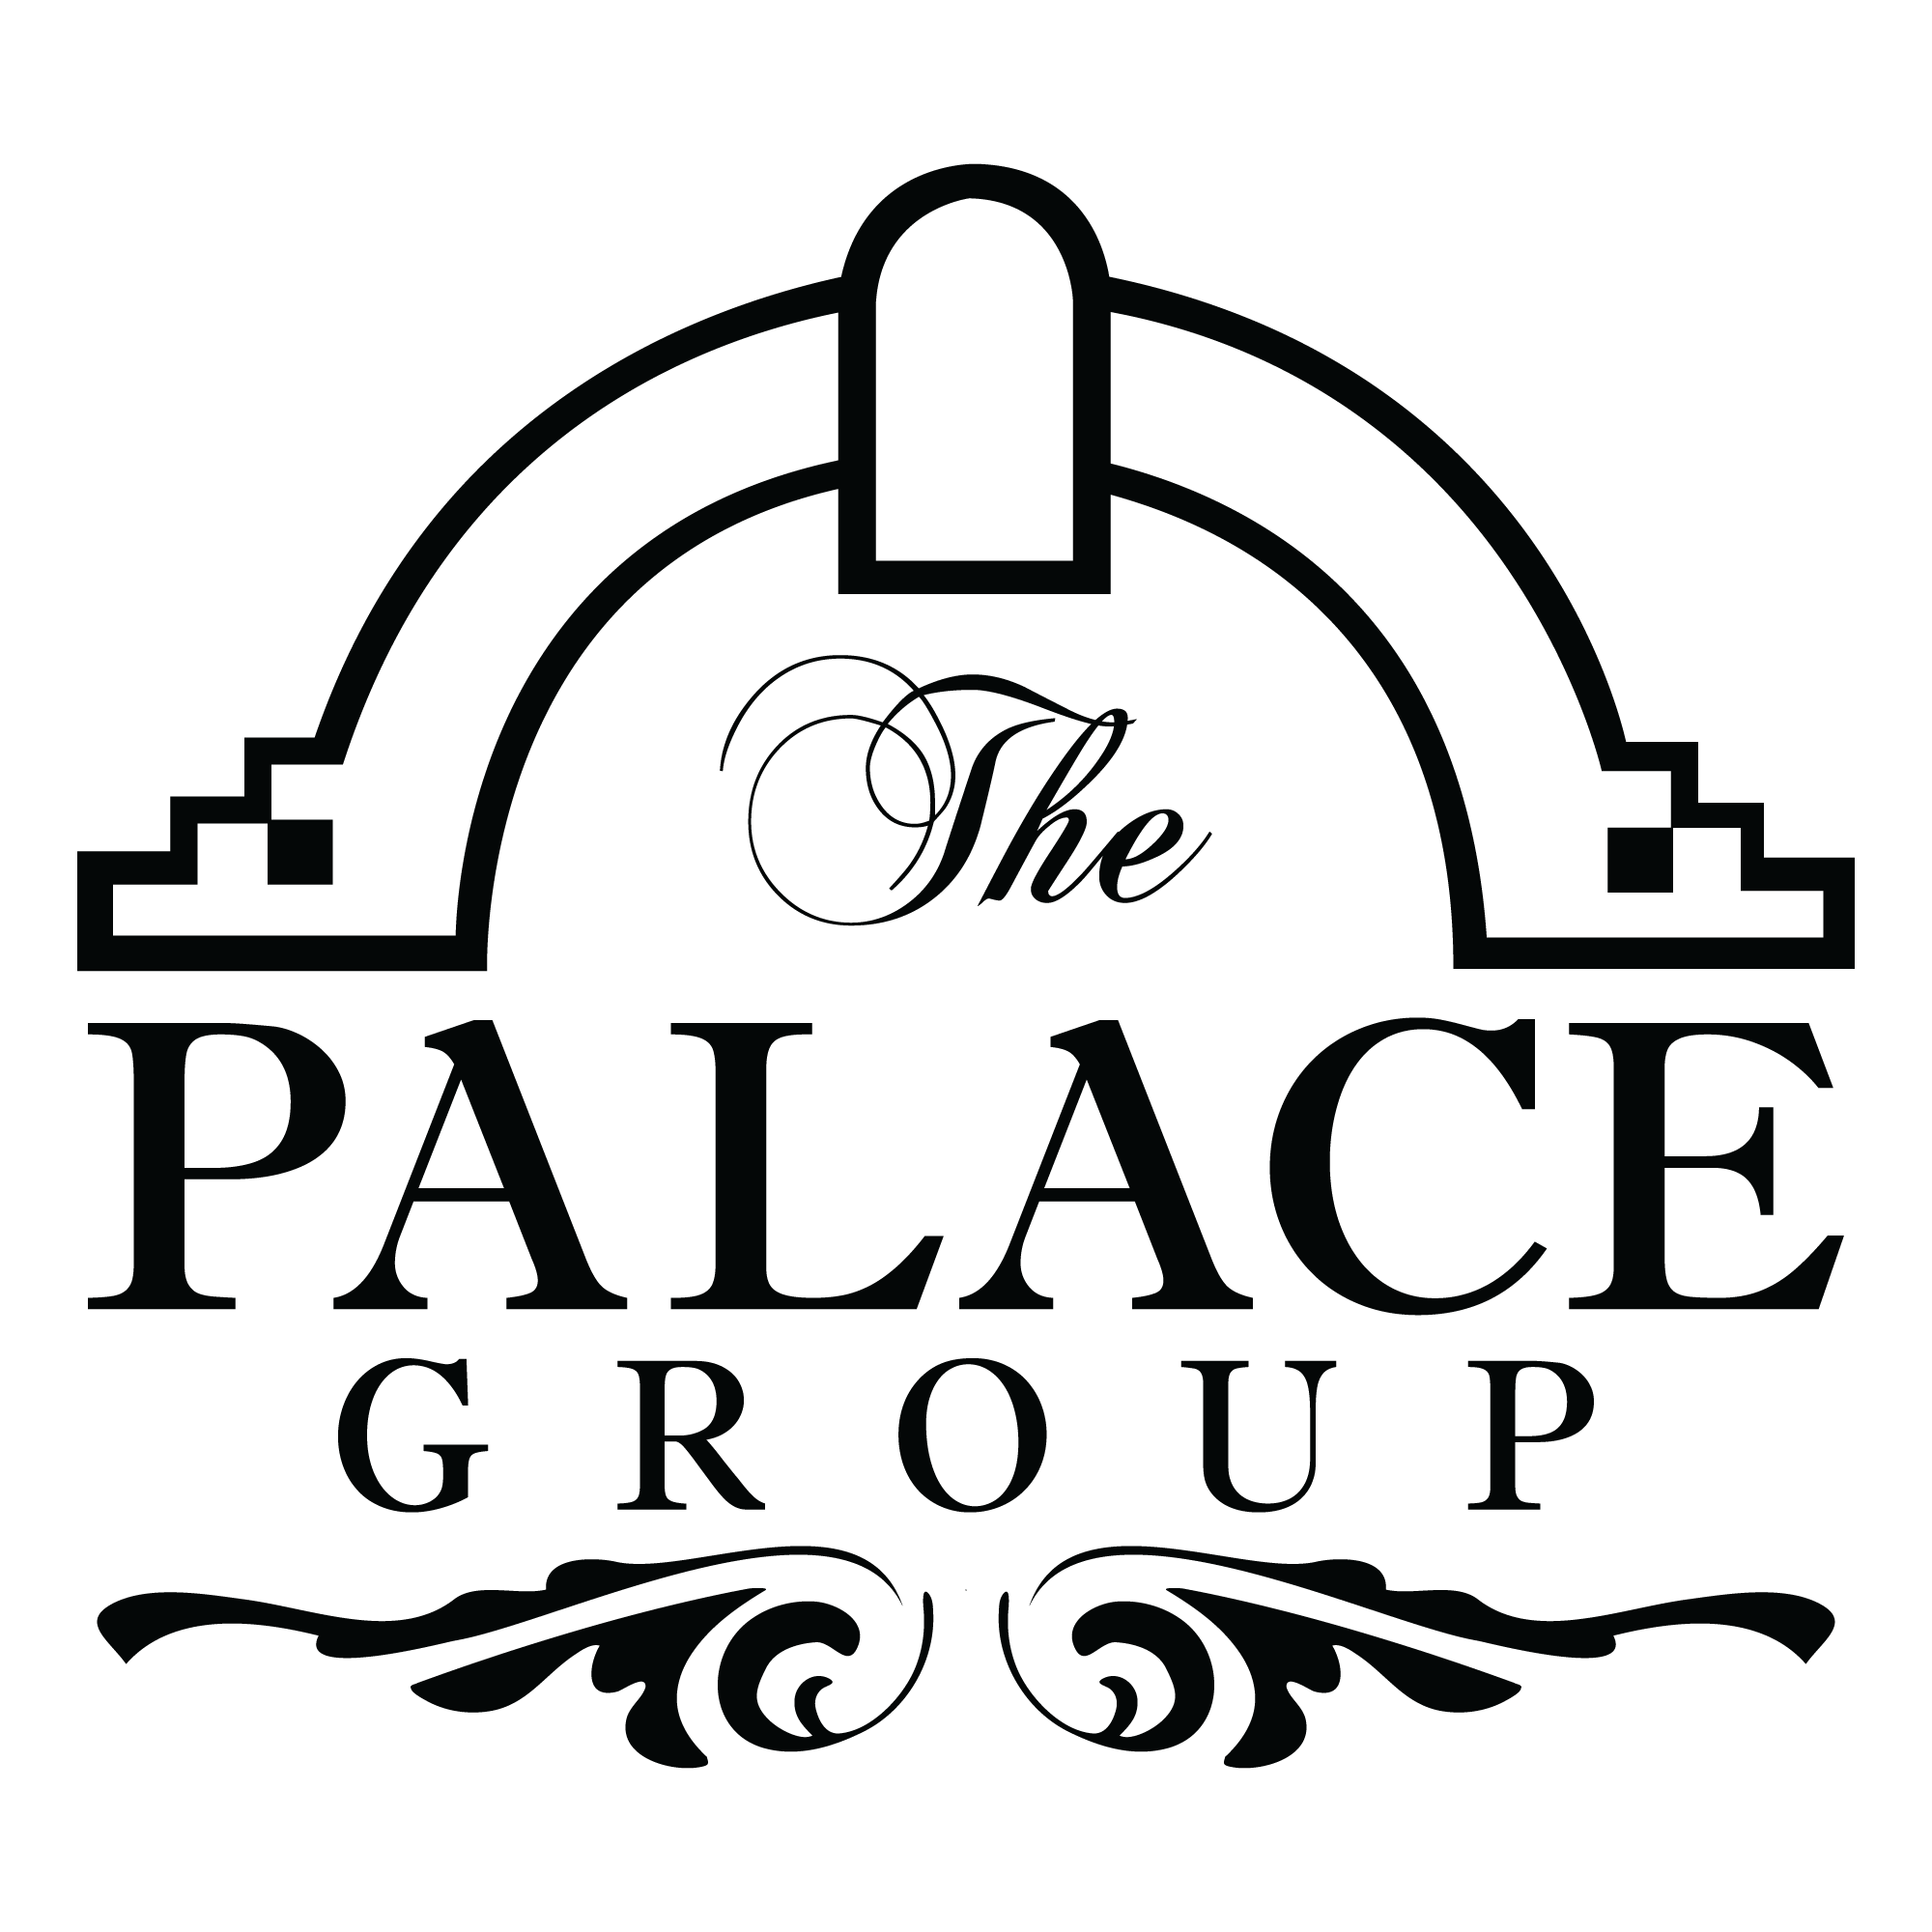 The Palace Group logo